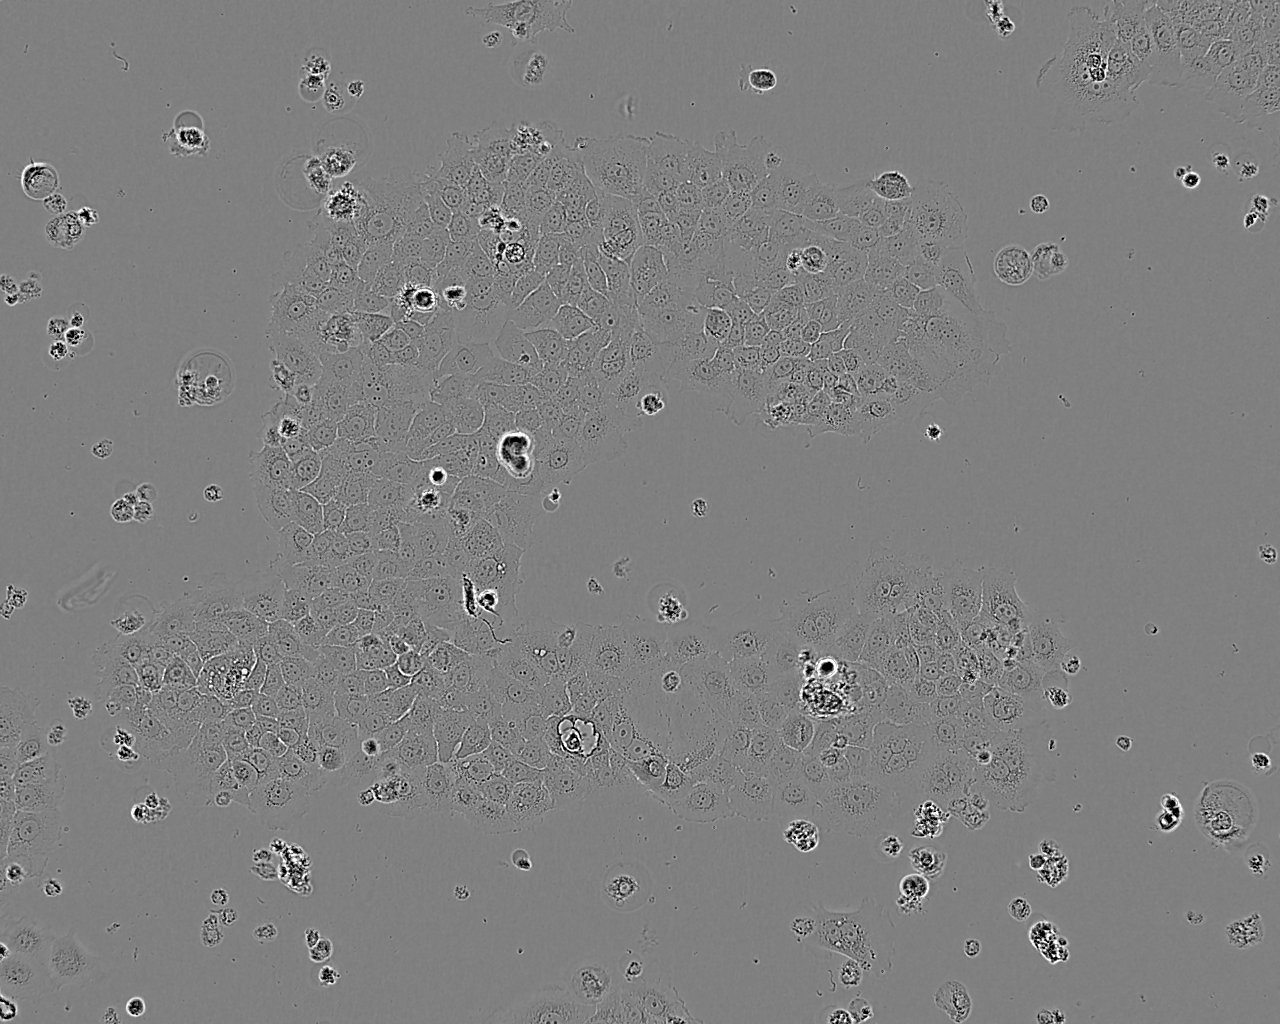 8505C epithelioid cells人甲状腺癌细胞系,8505C epithelioid cells